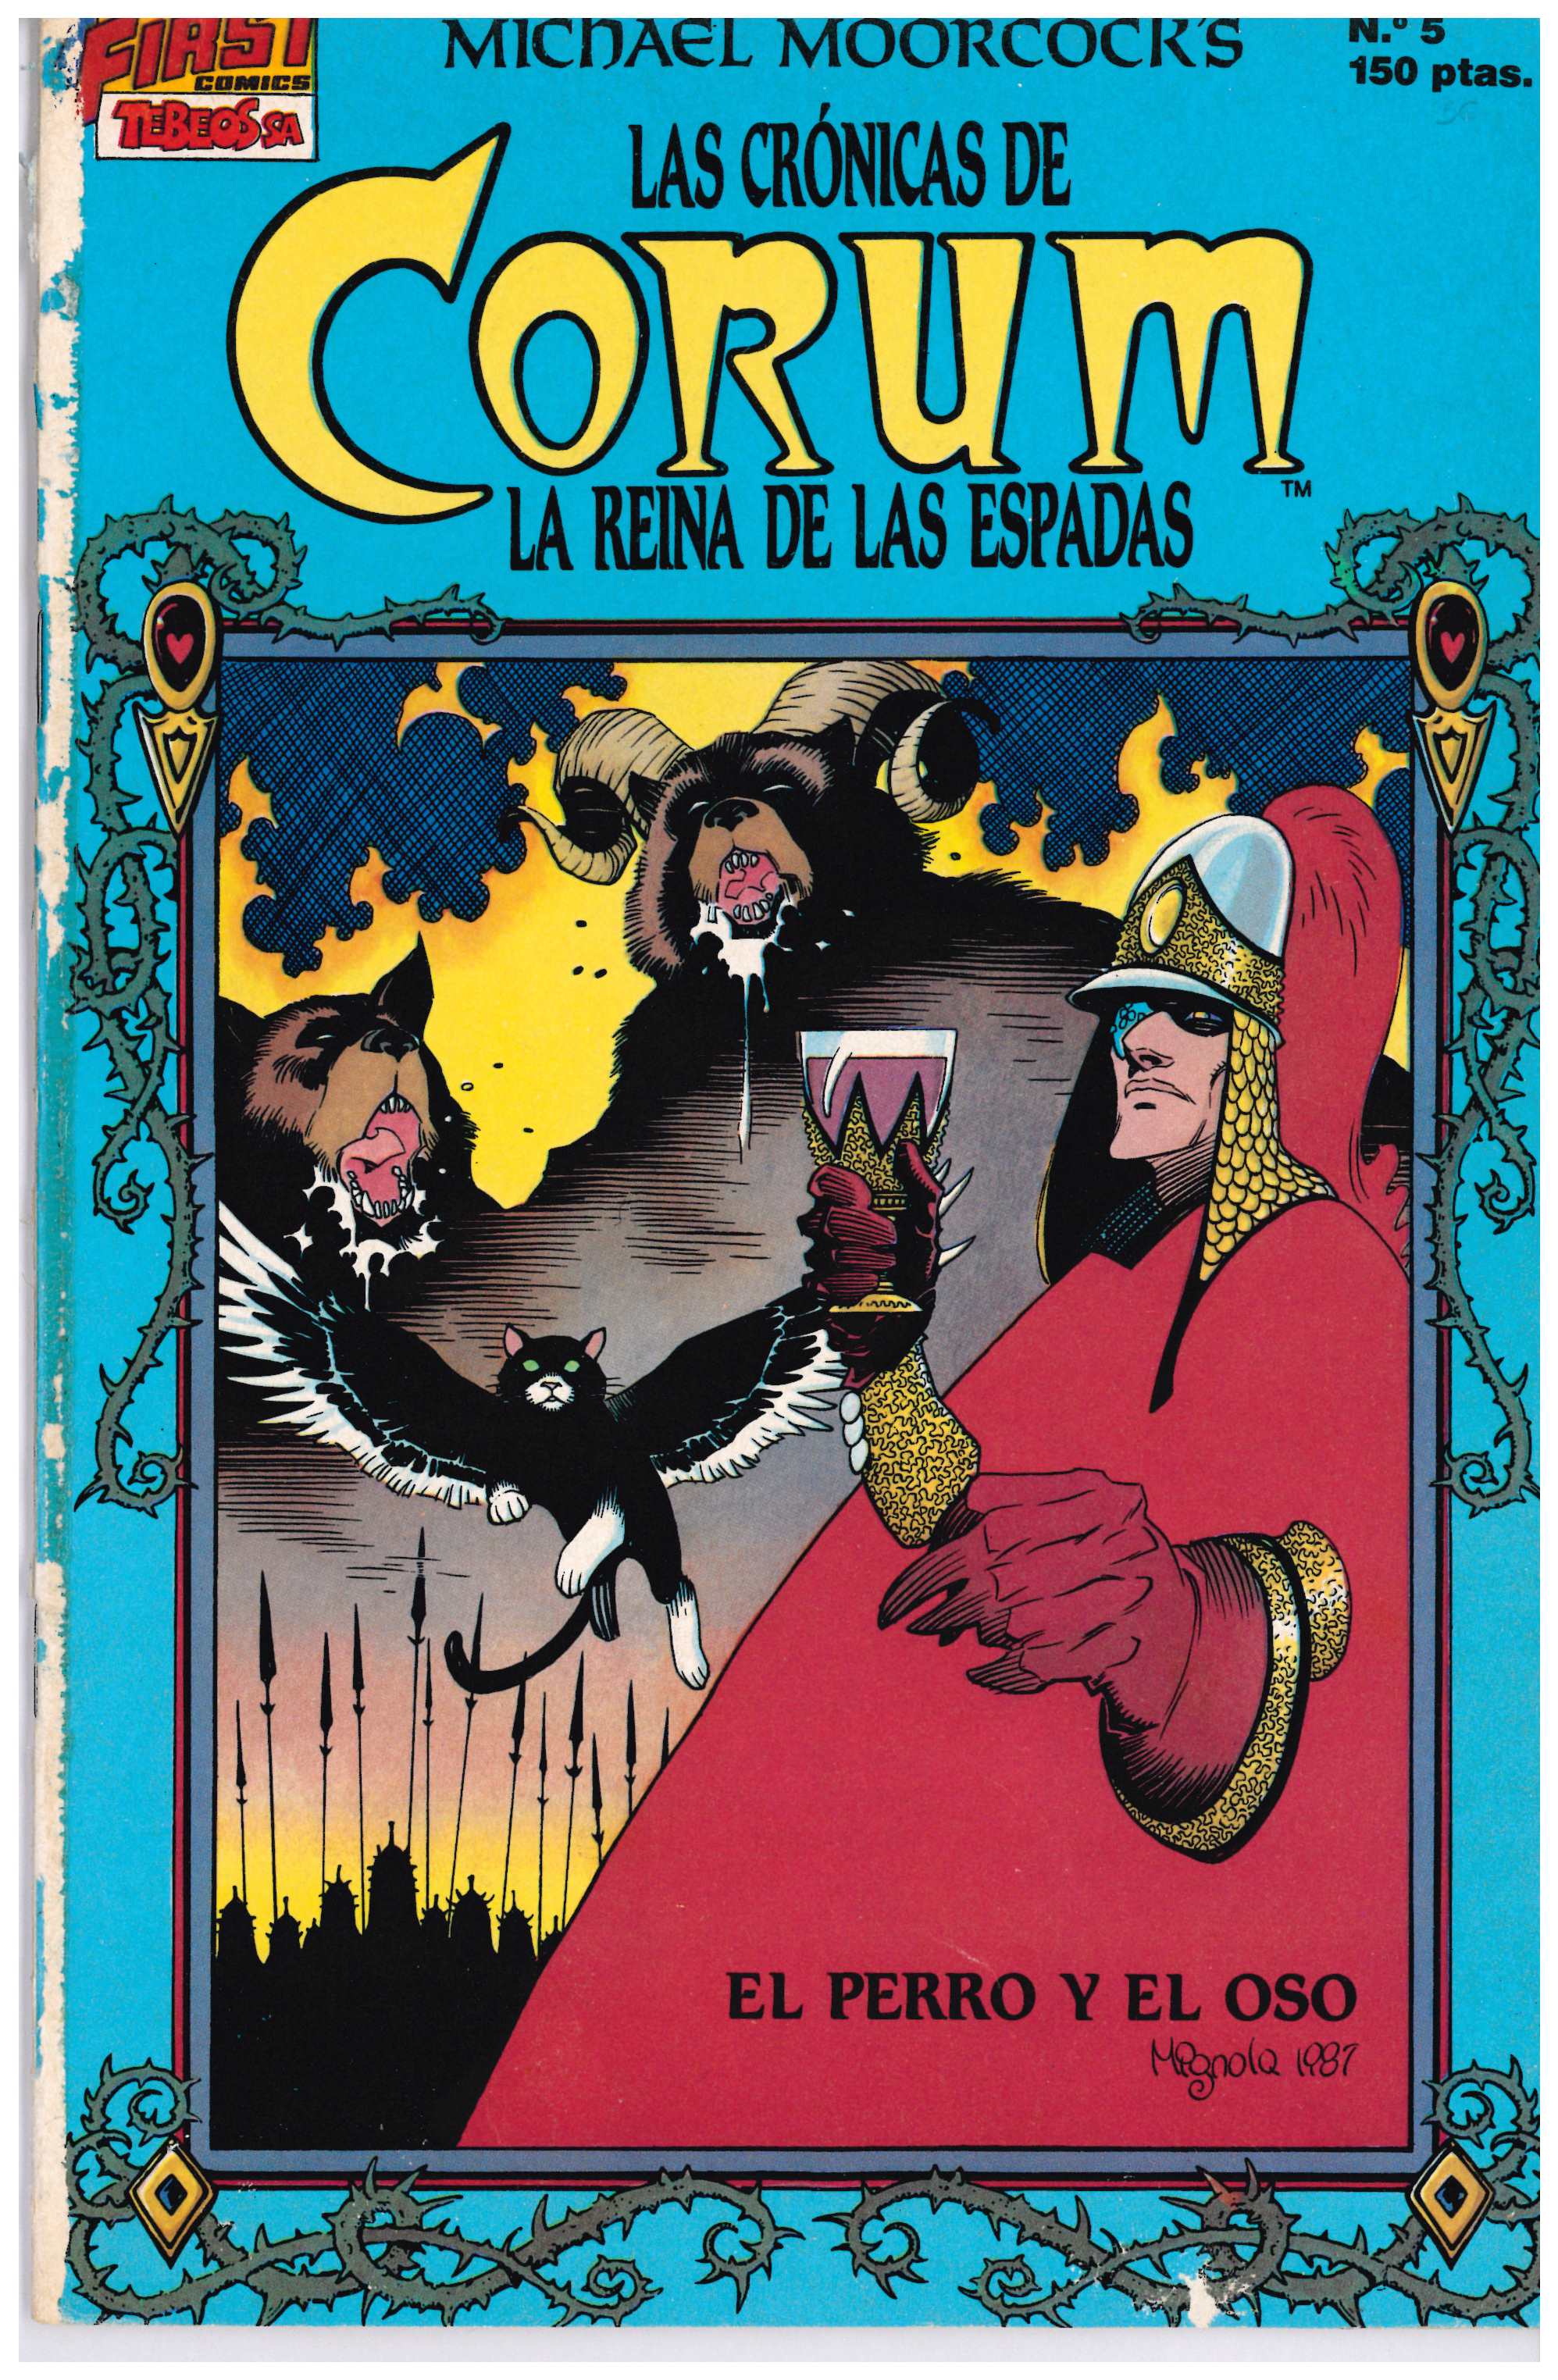 Las Crónicas de Corum. Ediciones B 1988. Nº 5